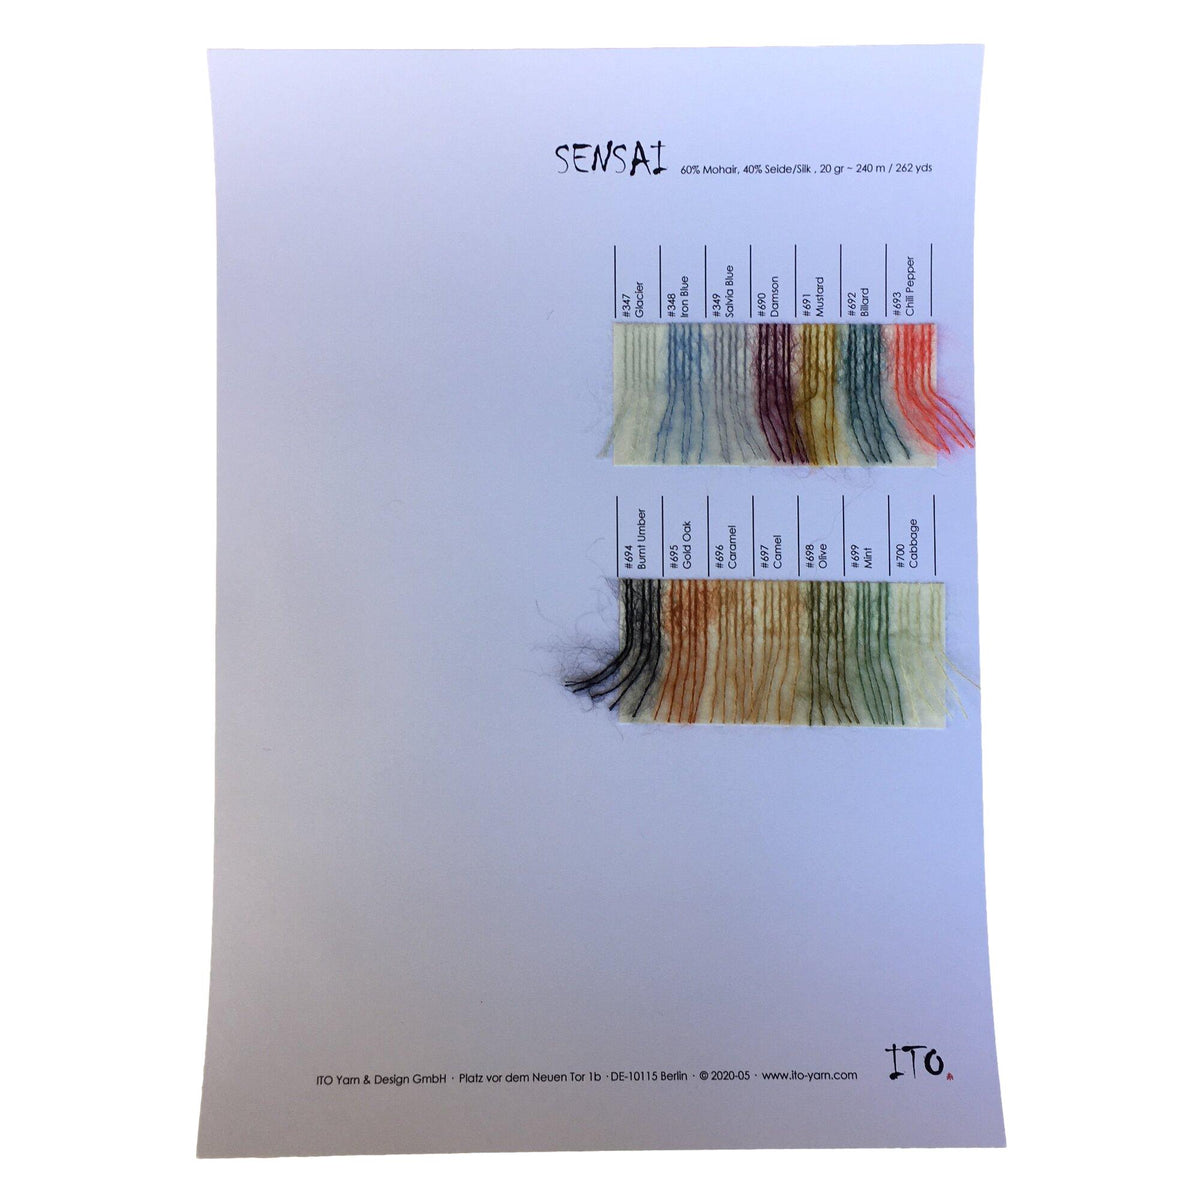 ITO Sensai colour card samples - Thread Collective Australia